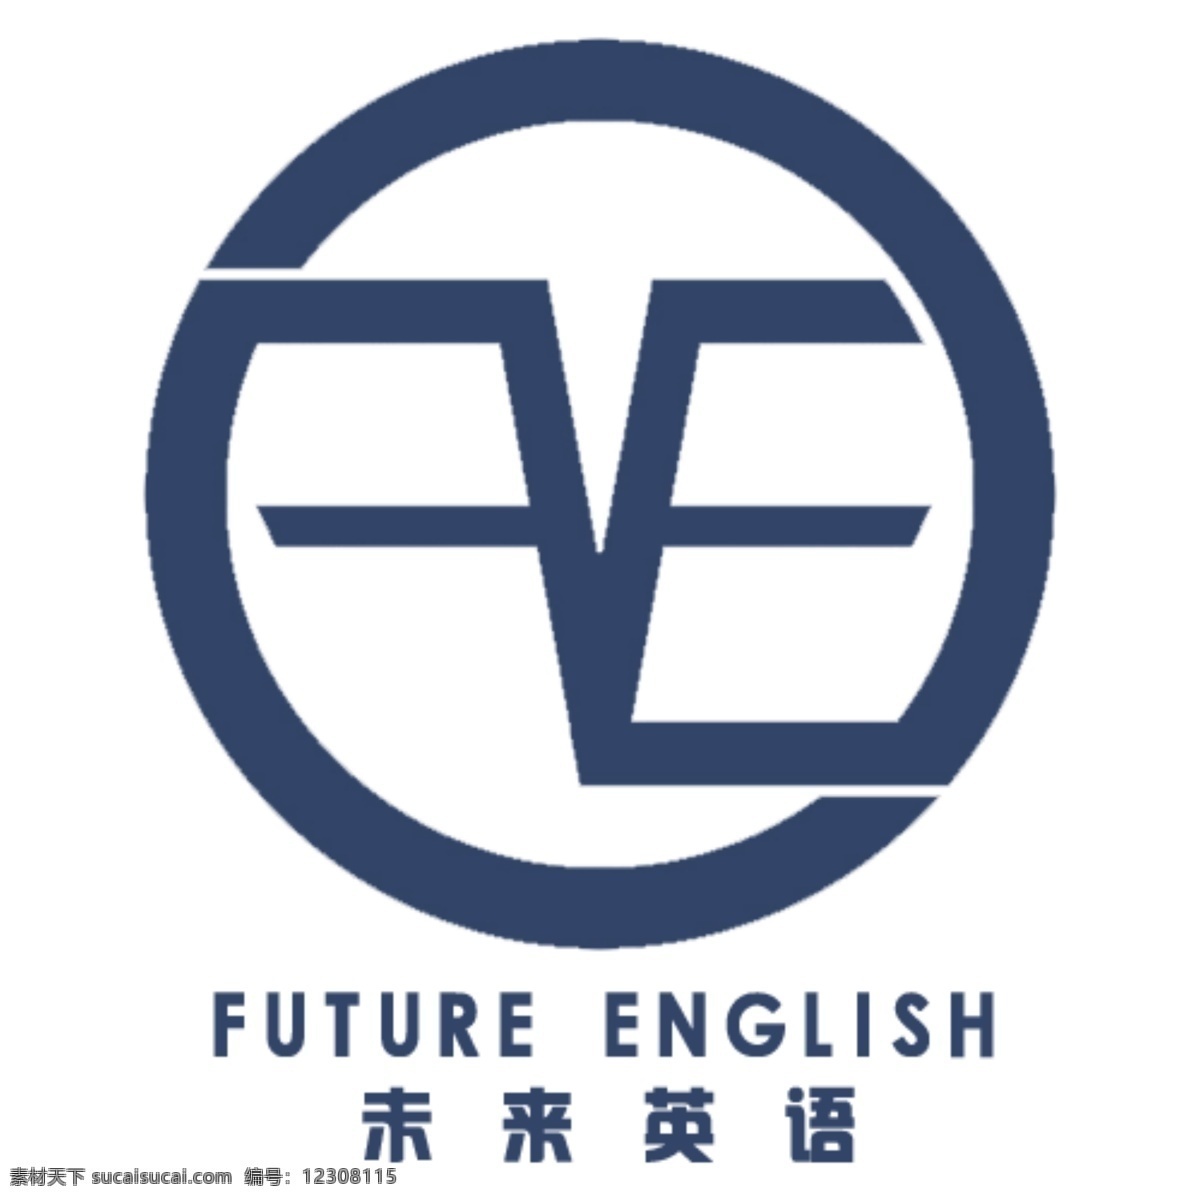 未来 英语 felogo logo 简约 未来英语 fe字母 原创设计 其他原创设计